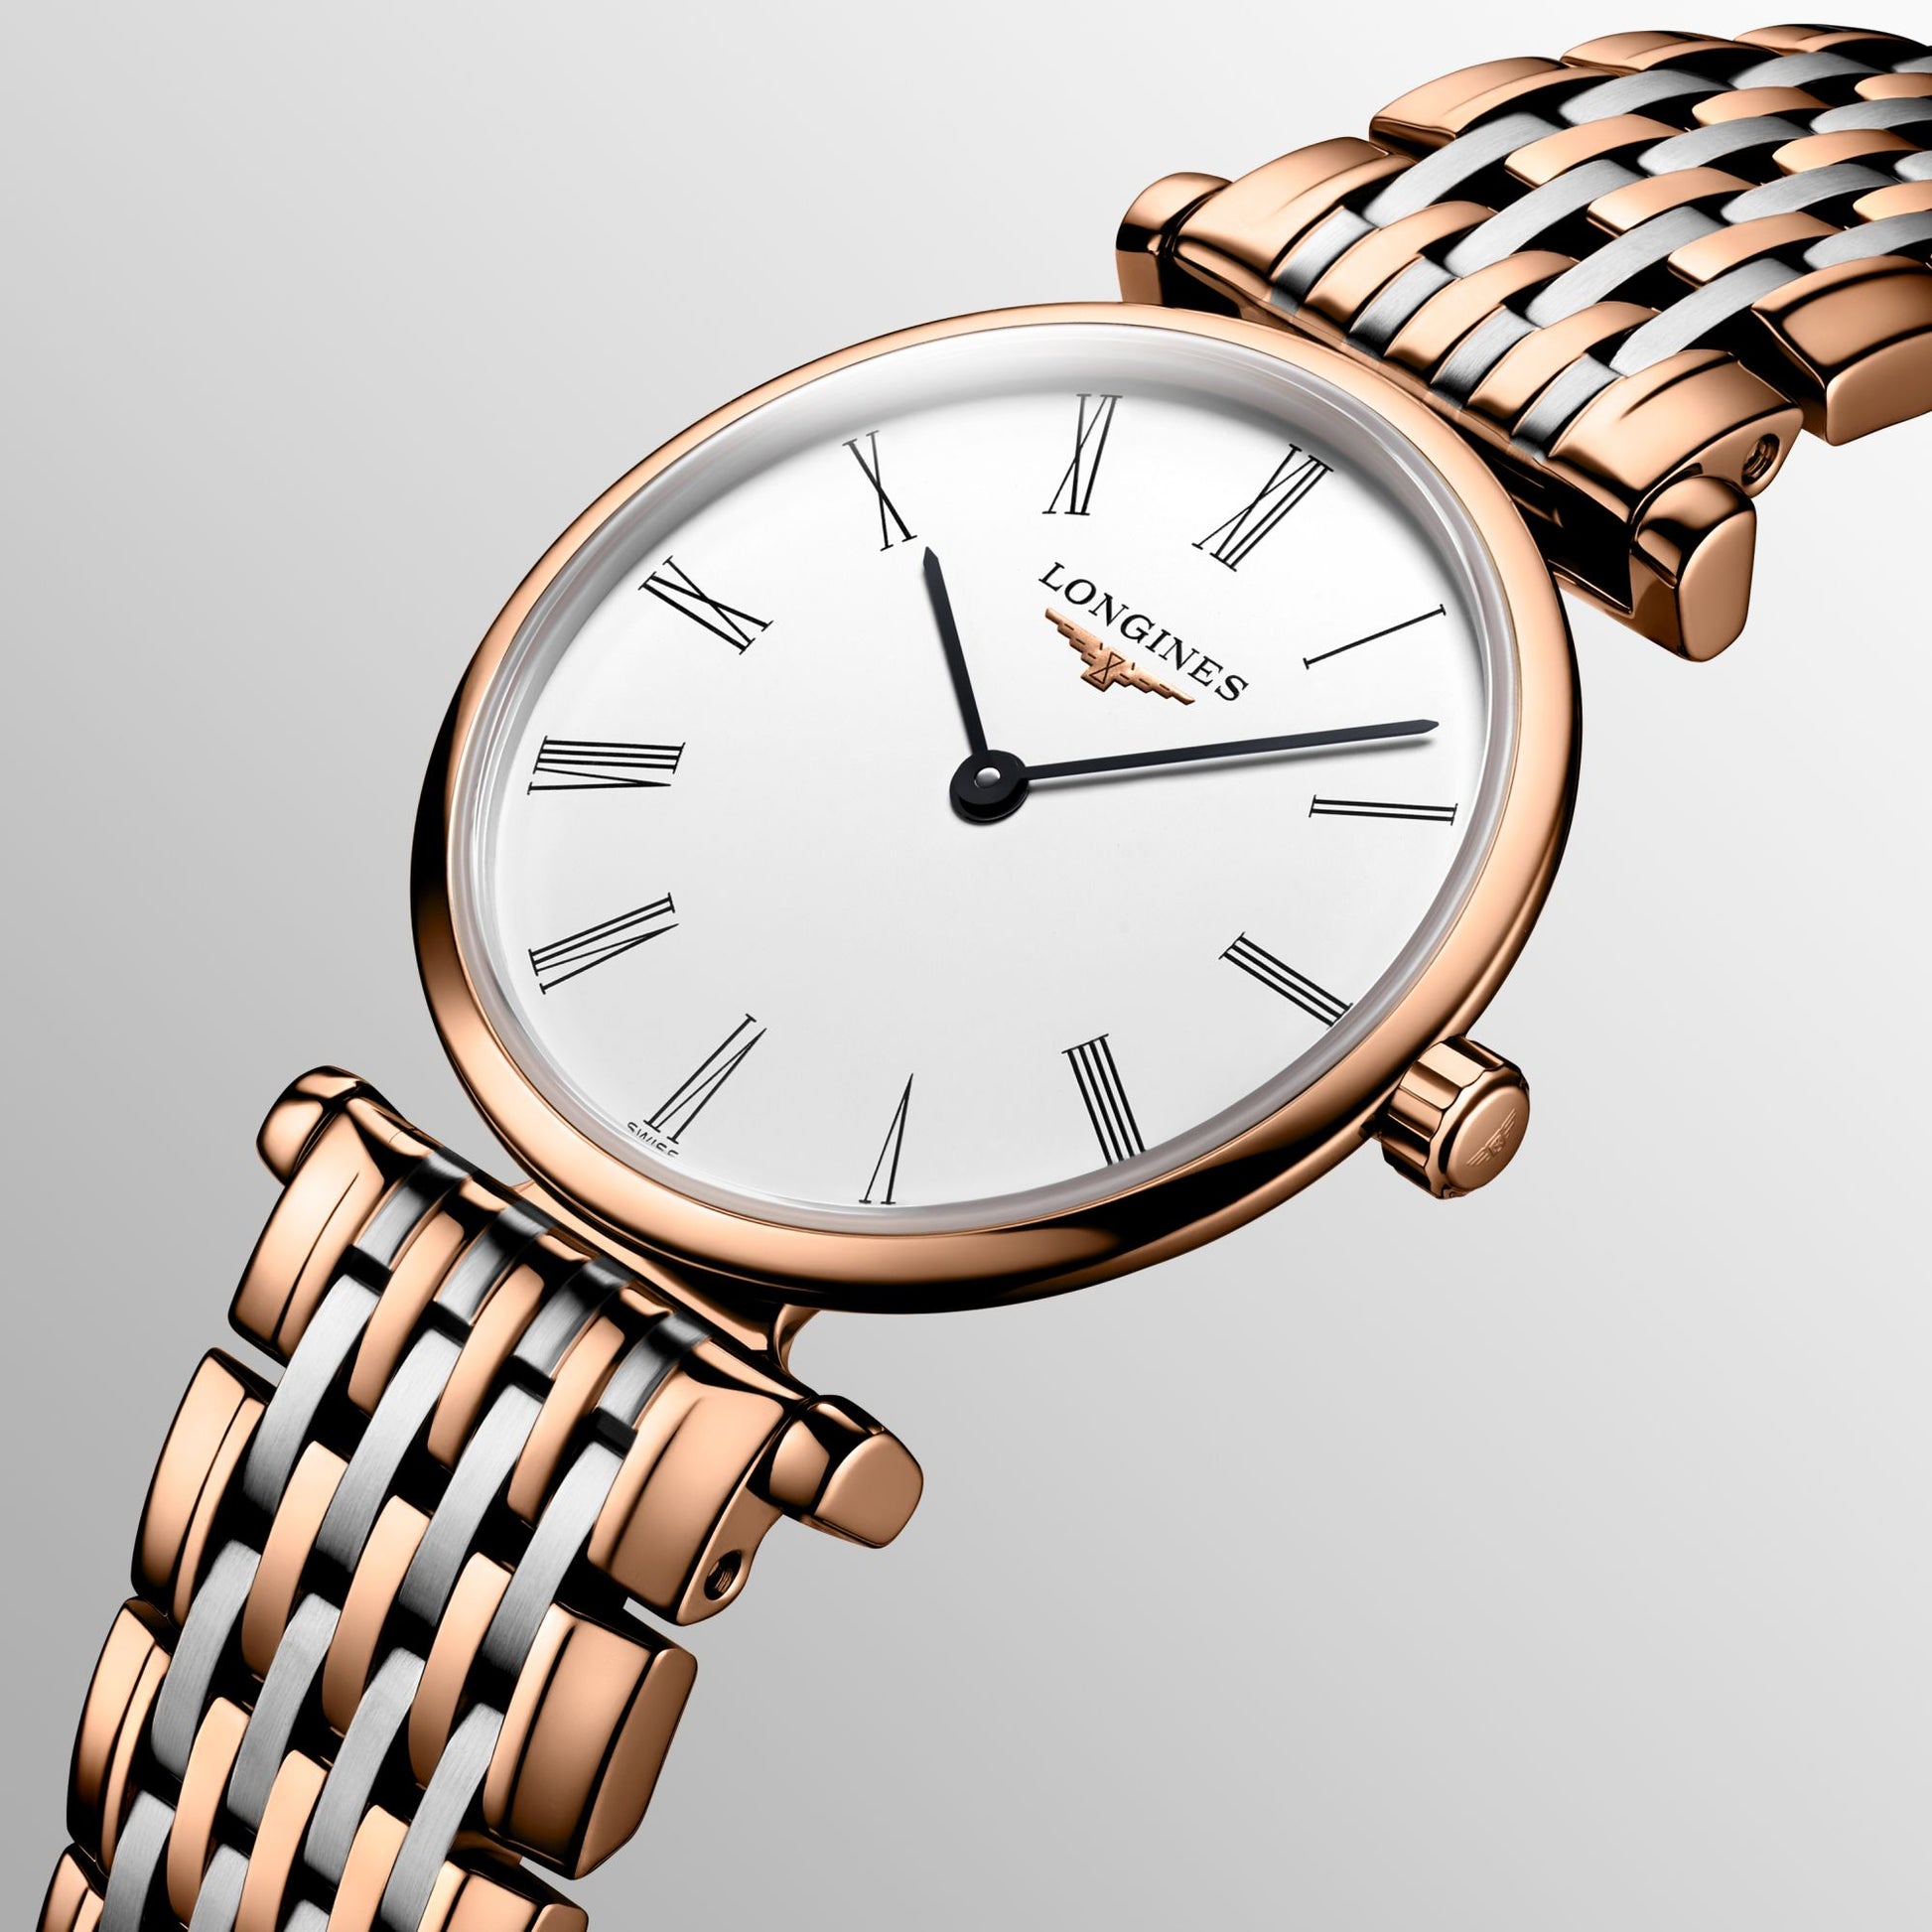 Longines La Grande Classique De Longines White Dial Two Tone Mesh Bracelet Watch for Women - L4.209.1.92.7